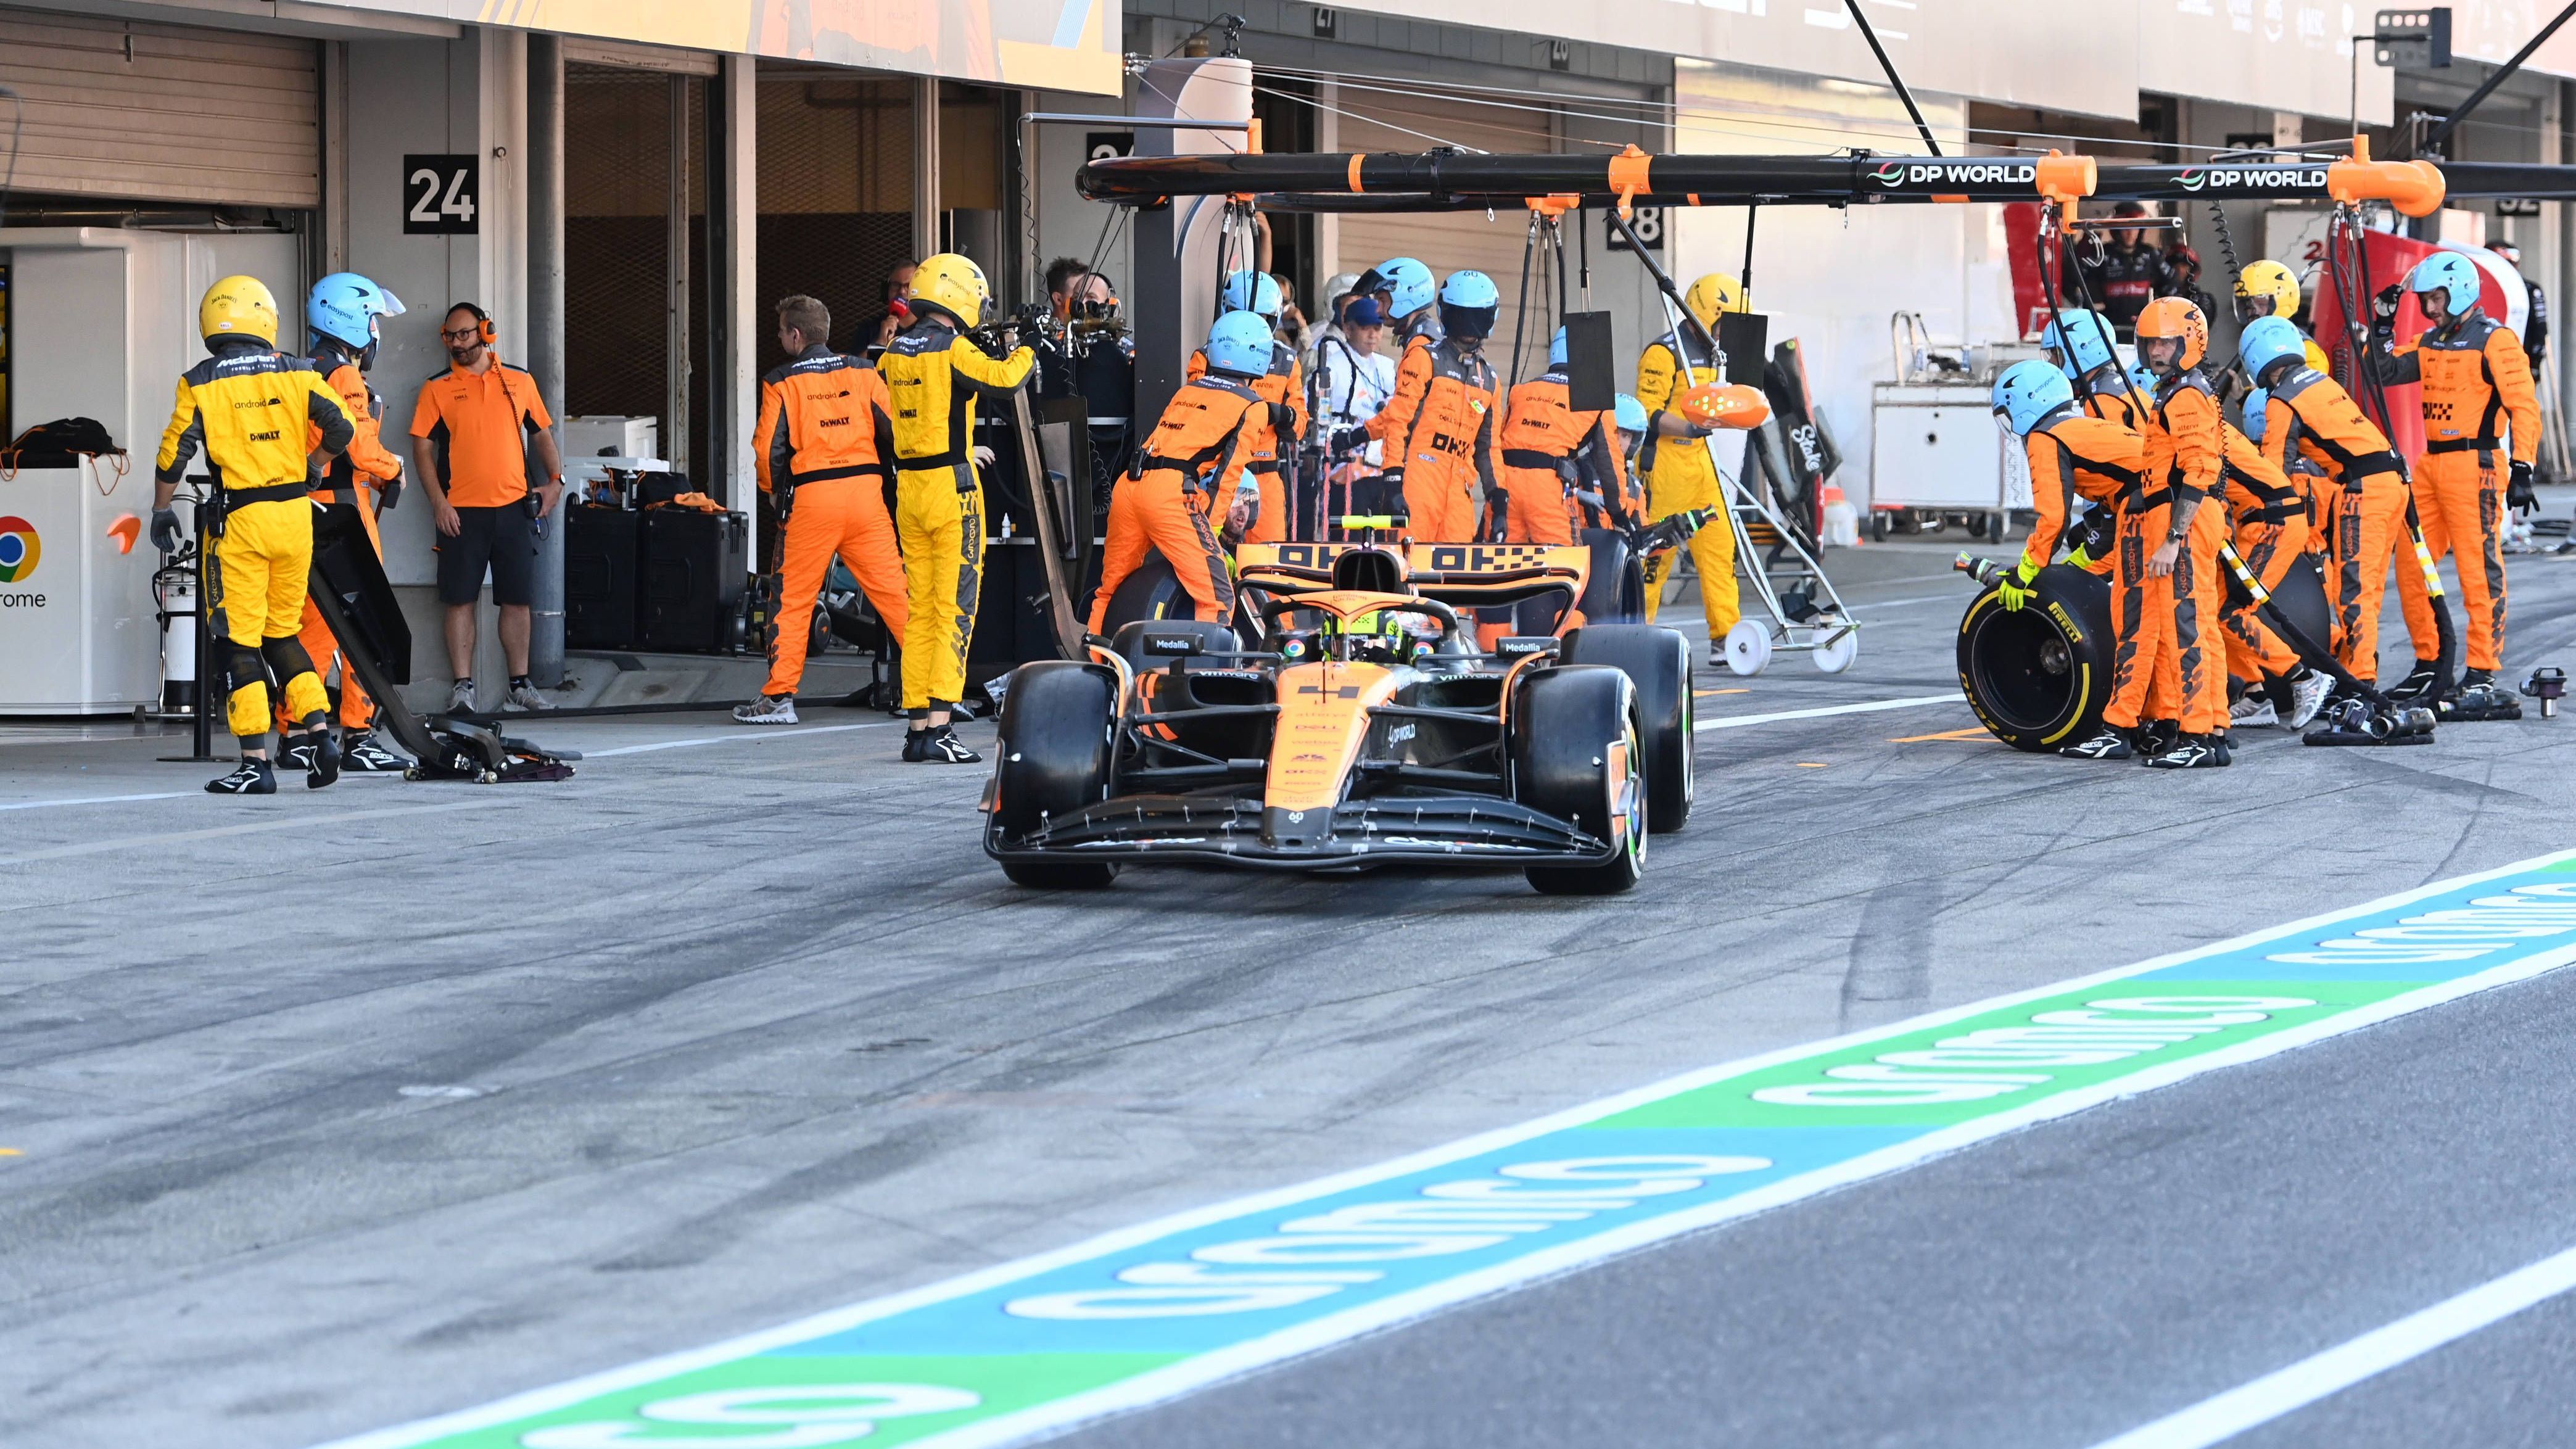 <strong>Gewinner: McLaren</strong><br>Damit war nicht zu rechnen. Noch zu Saisonbeginn performte das Team schwach, in Japan sprang mit den Rängen zwei und drei das beste Resultat dieser Saison heraus. In der Konstrukteurs-WM pirschen sich die orangen Boliden mehr und mehr an Aston Martin heran, Rang vier ist schon lange nicht mehr ausgeschlossen. Starkes Comeback nach einem schwachen Start.